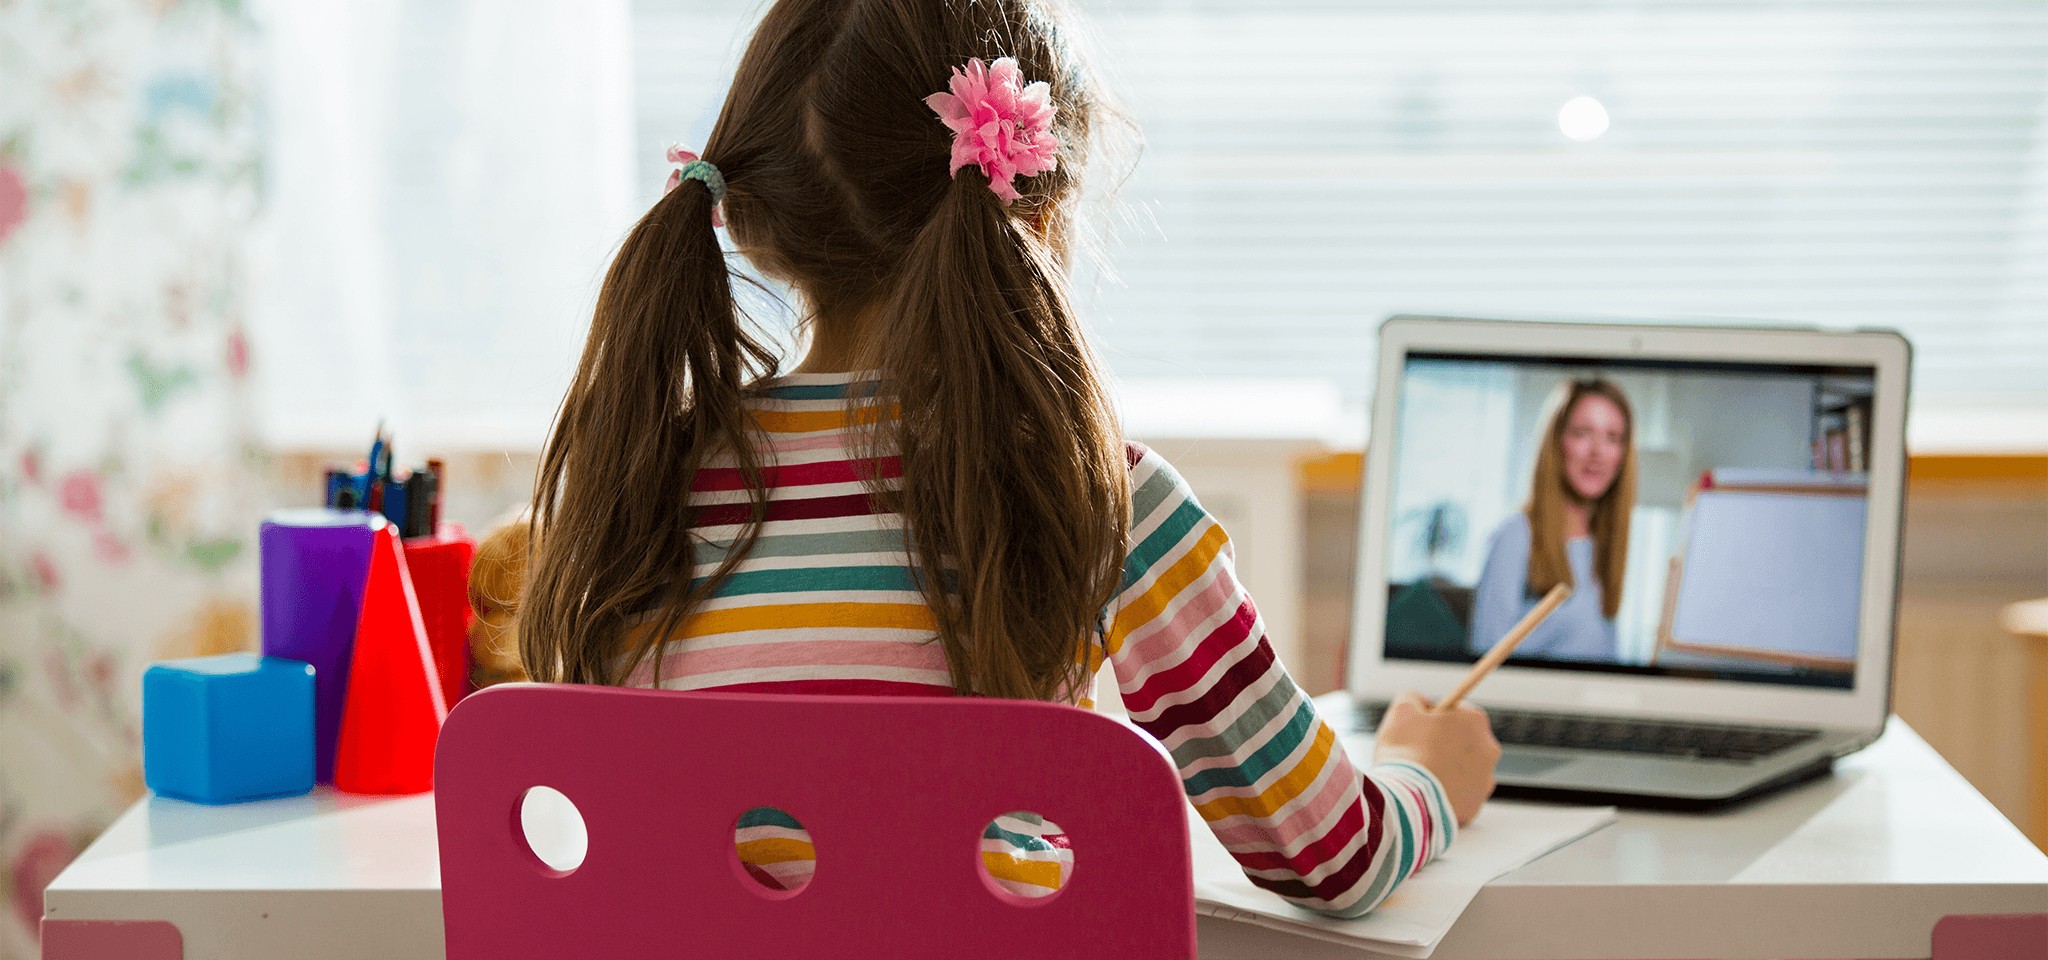 Számítógép gyereknapra költséghatékonyan? Így hasznosíthatod újra régi laptopodat a gyerek számára